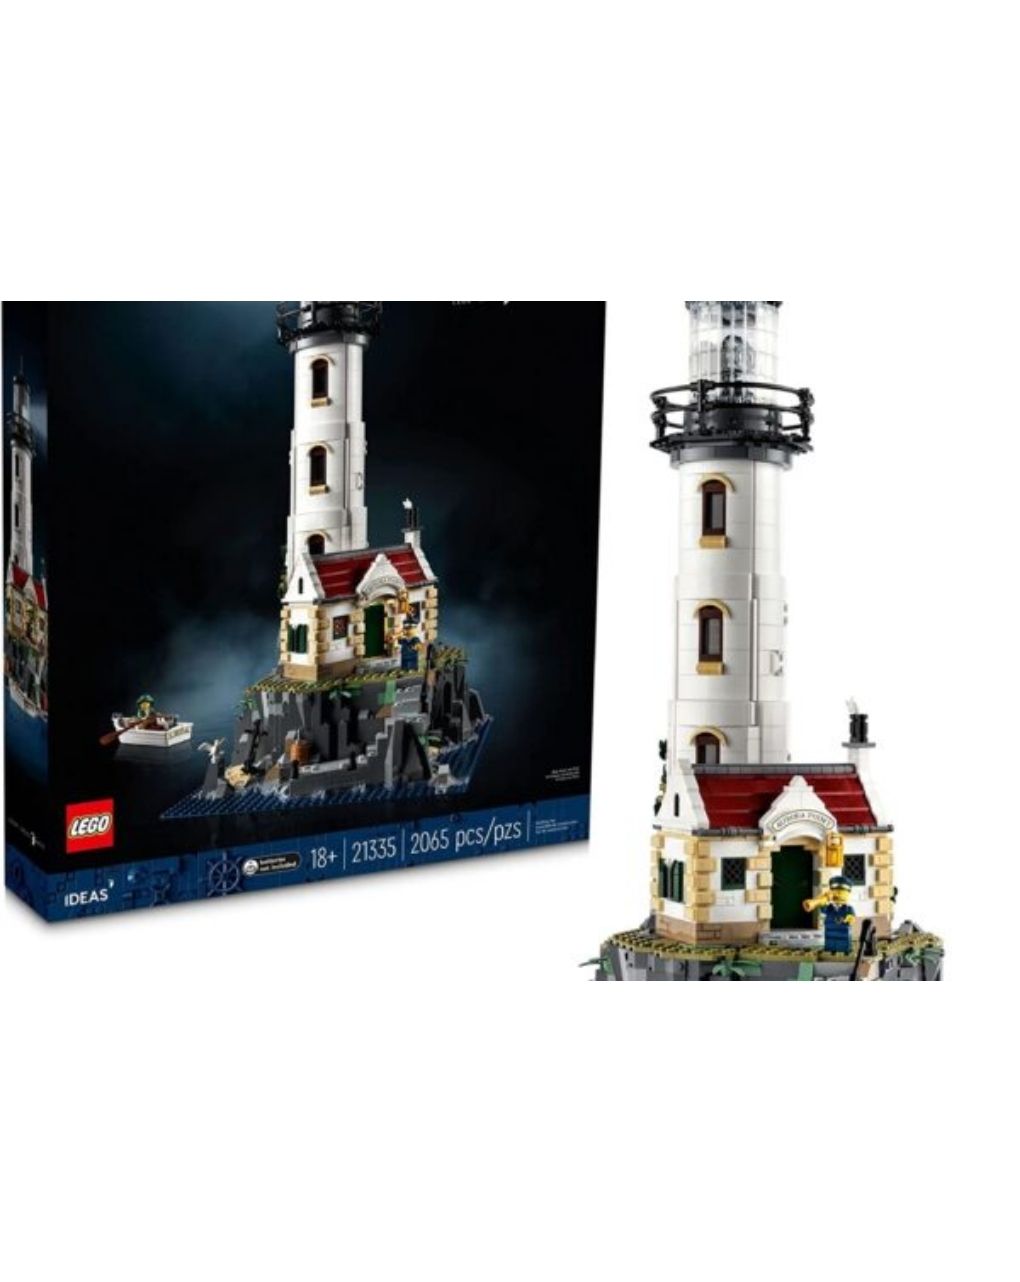 Lego ideas motorized lighthouse 21335